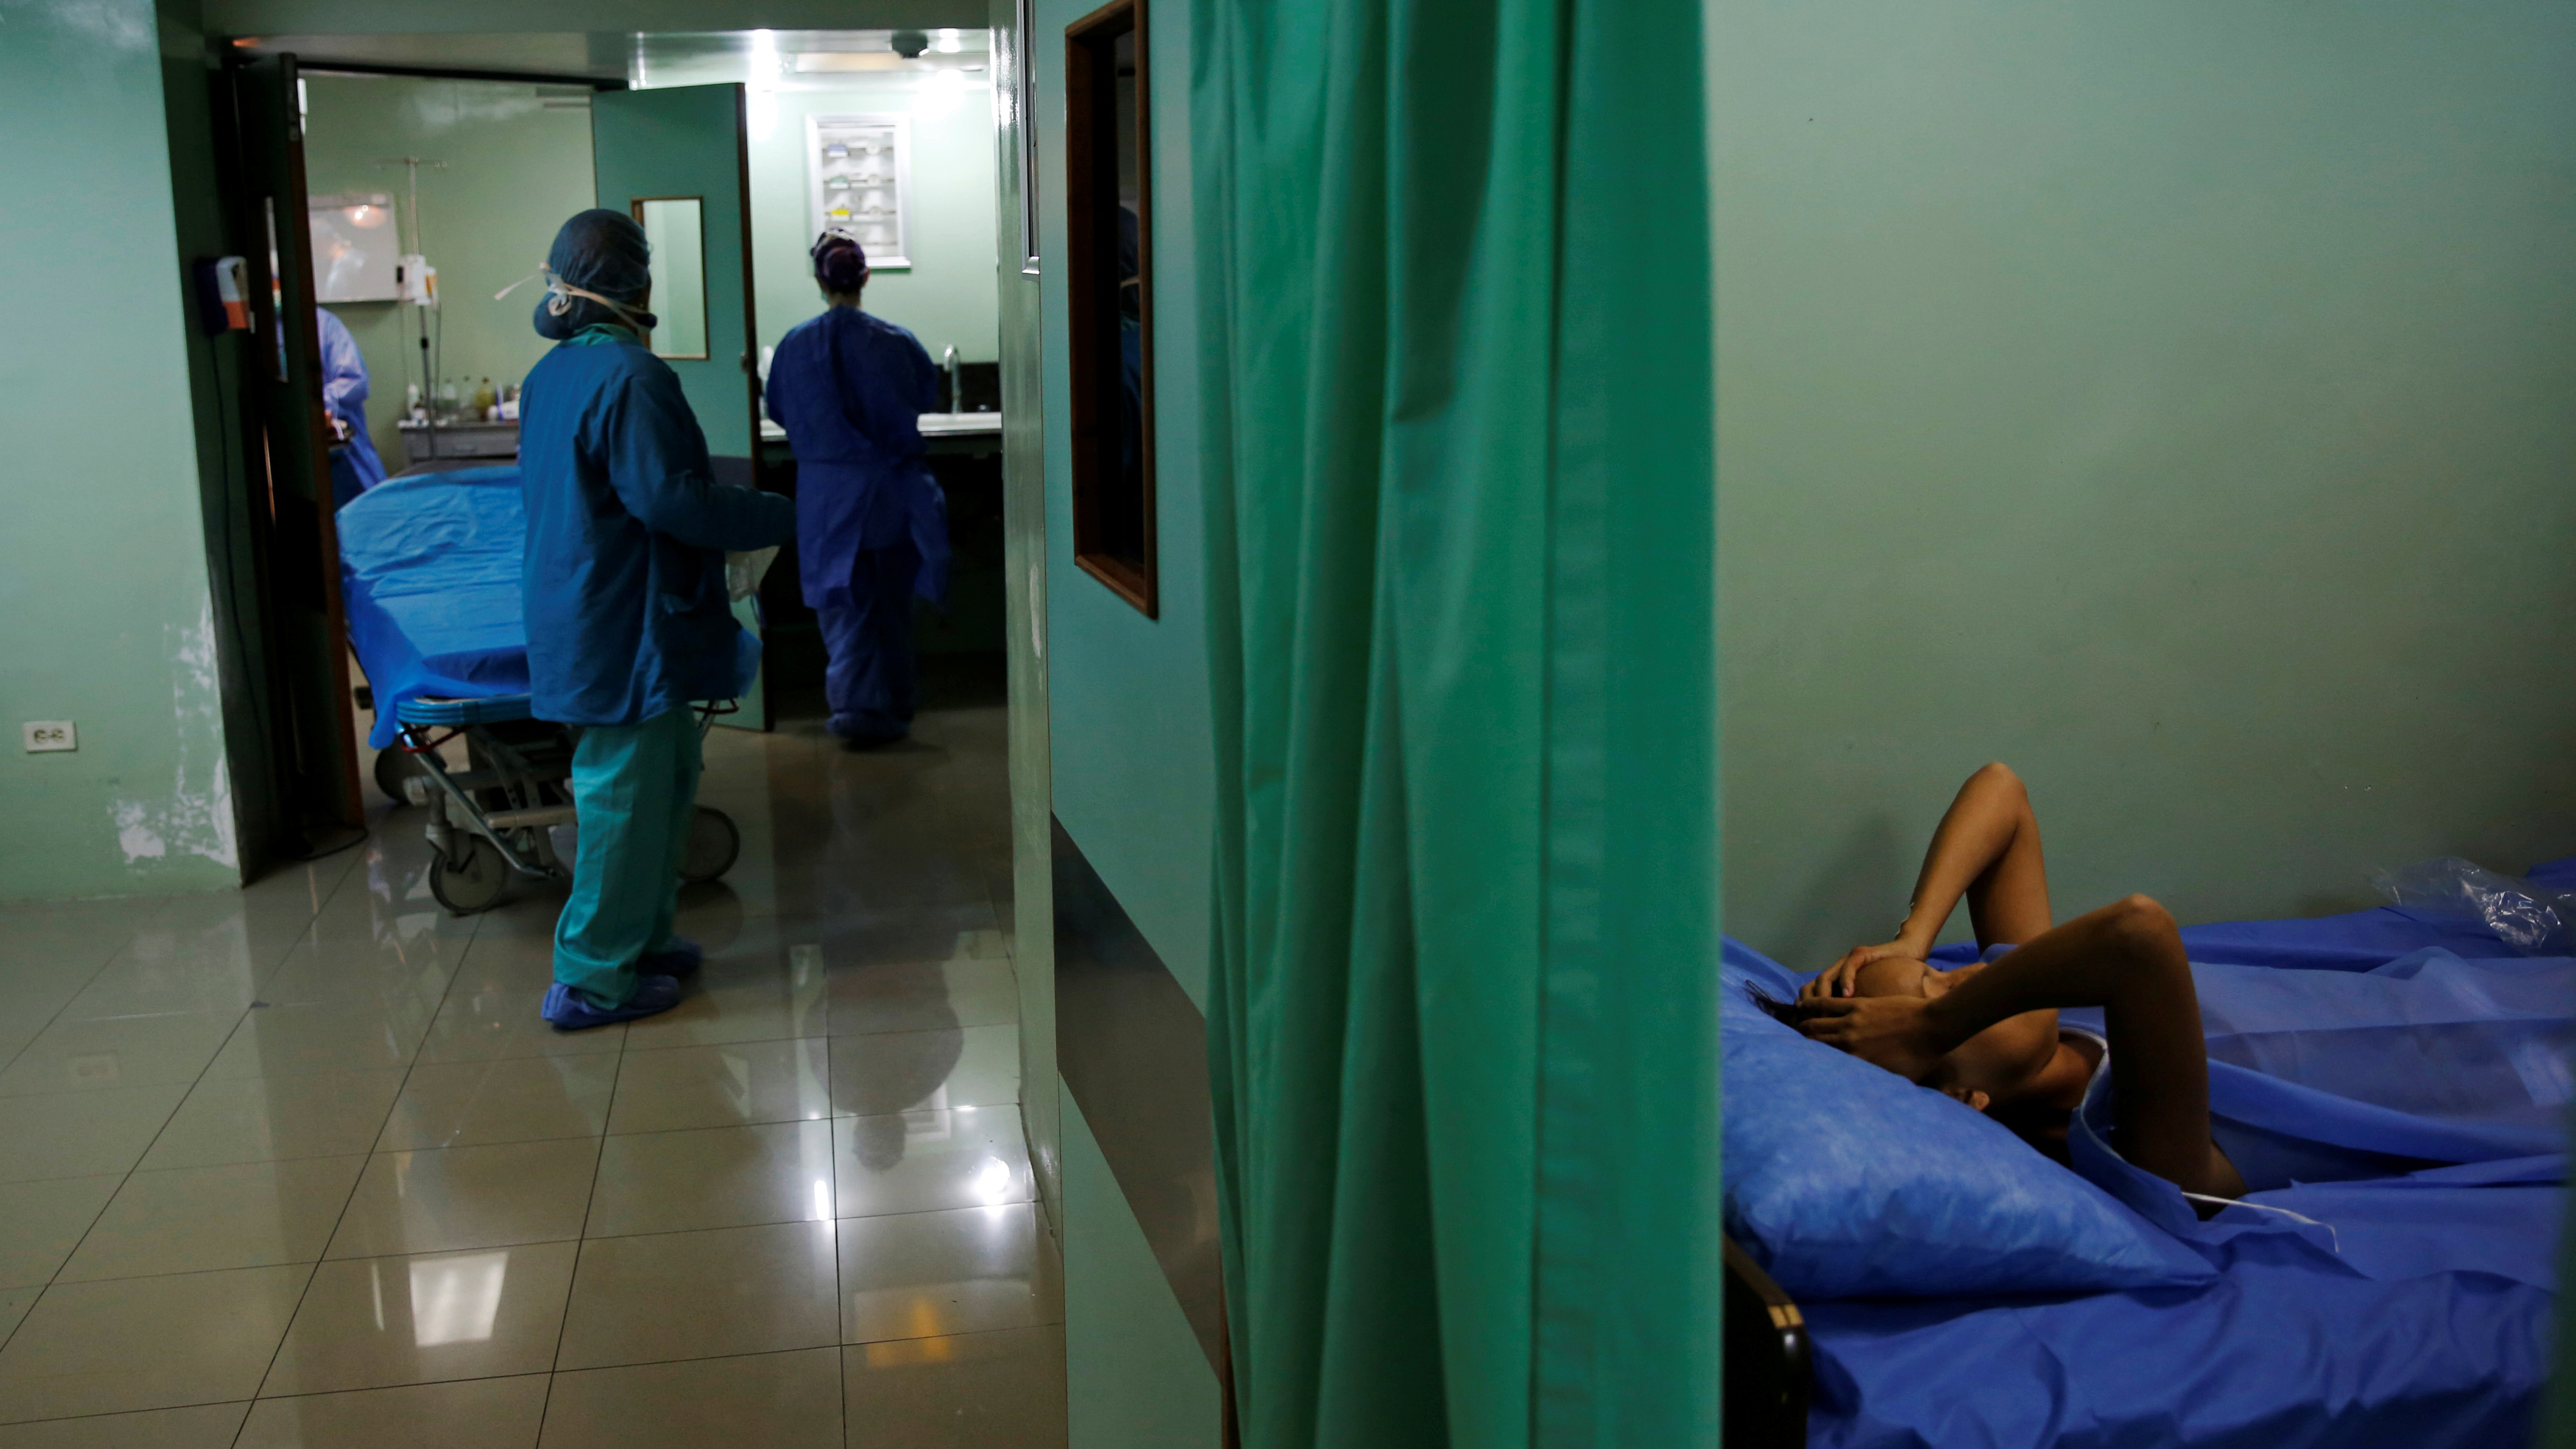 El colapso sanitario en Venezuela se hace viral por una foto de parturientas en una sala de espera